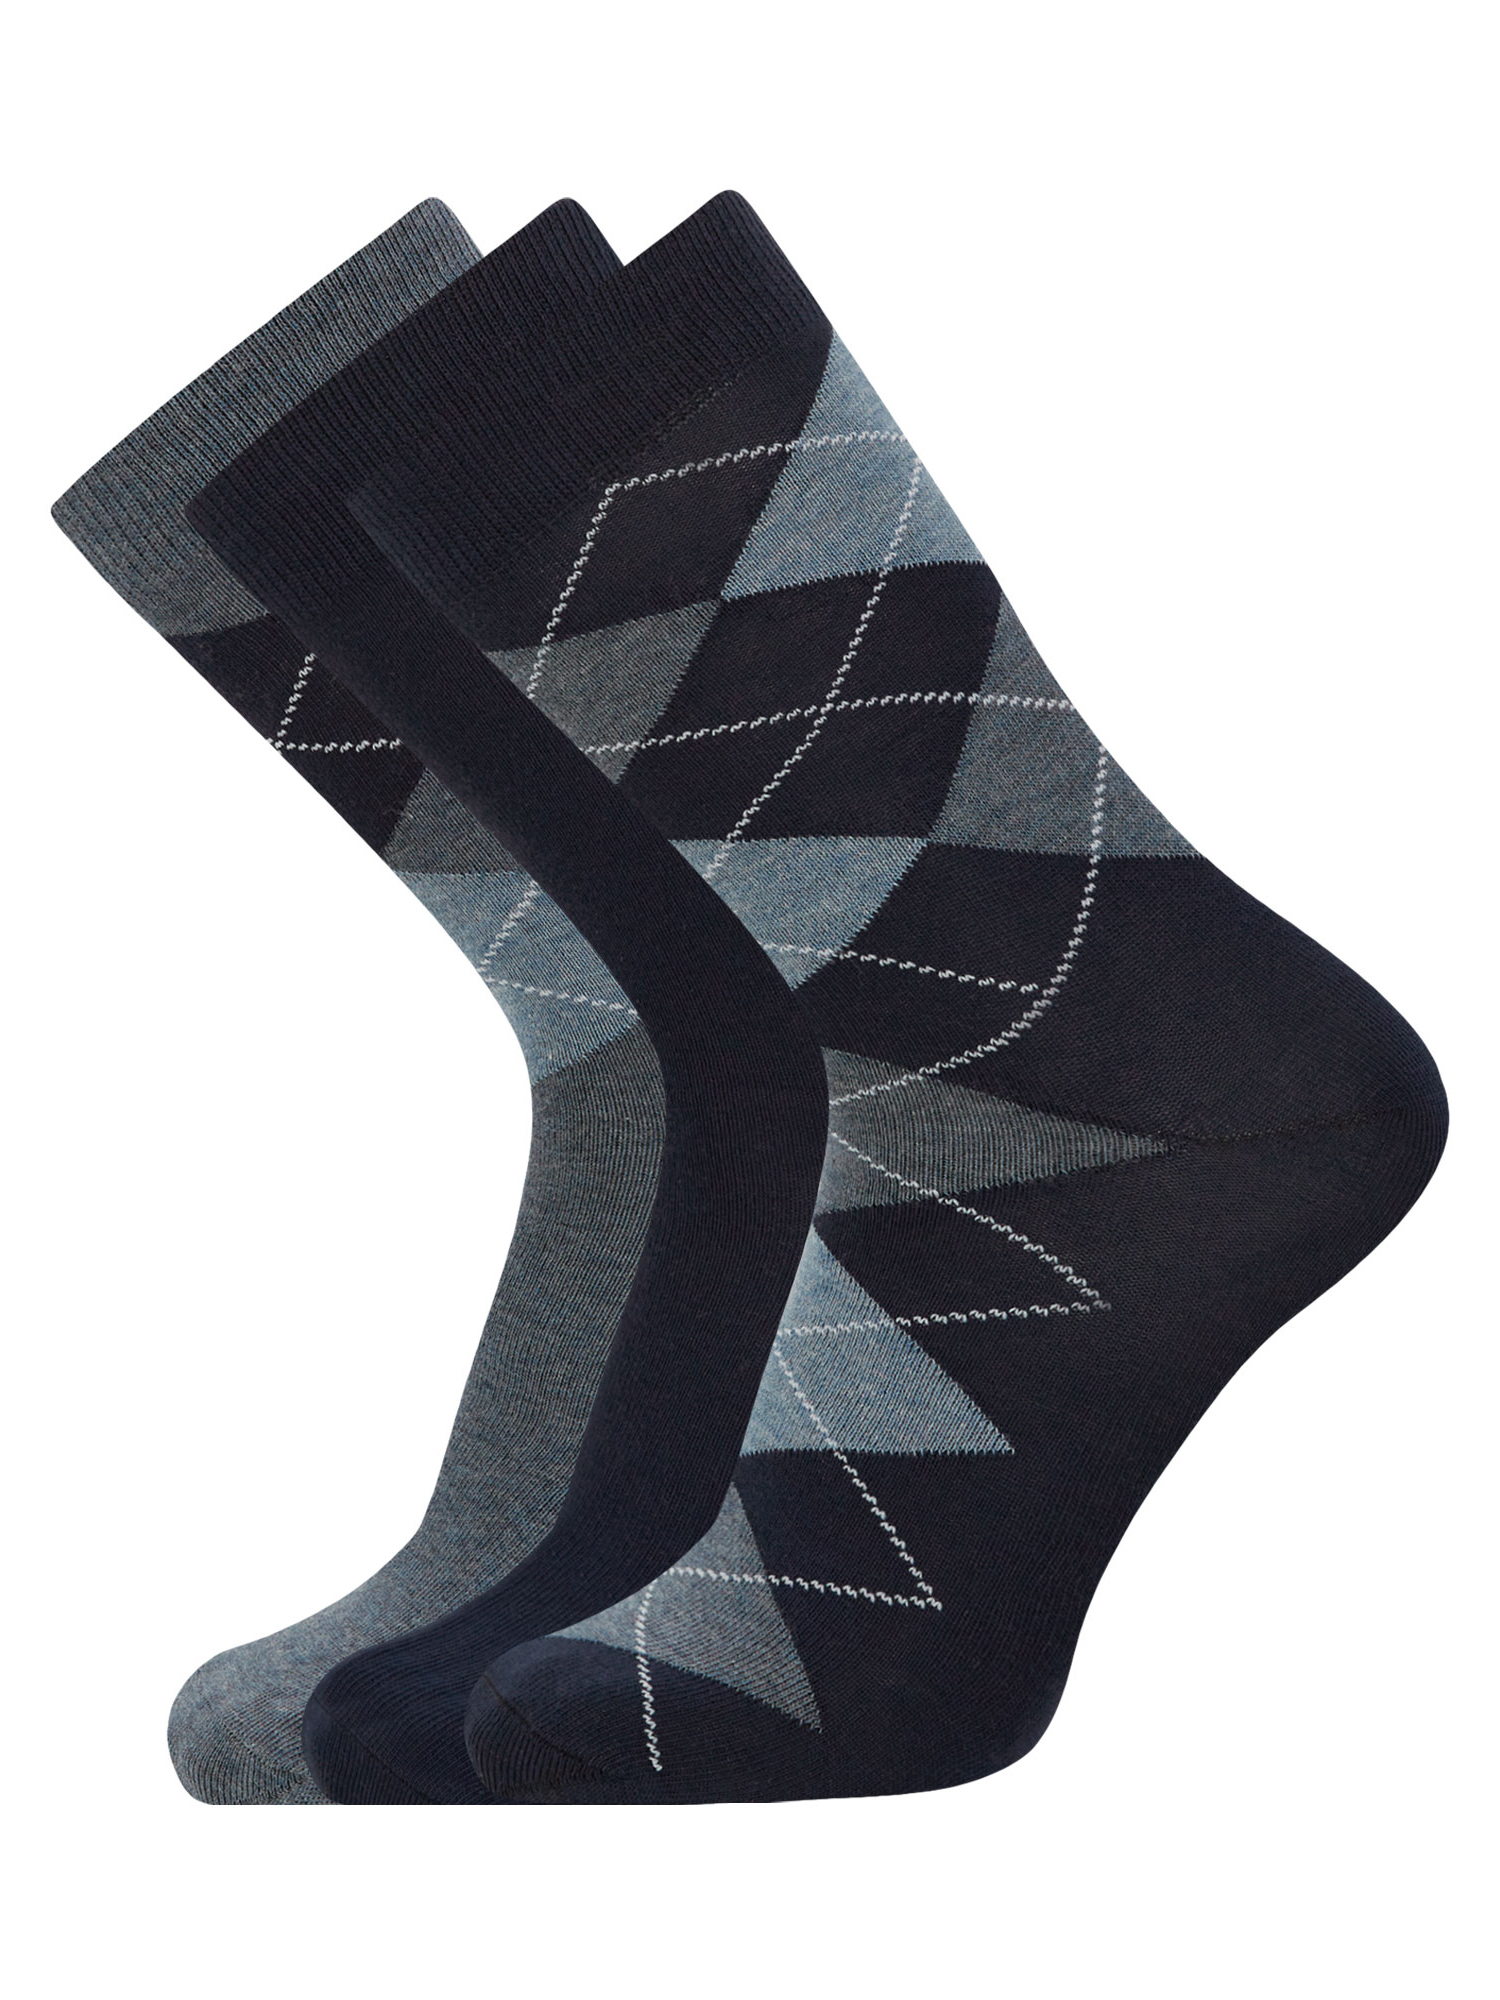 Комплект носков мужских oodji 7B233001T3 синих 44-47